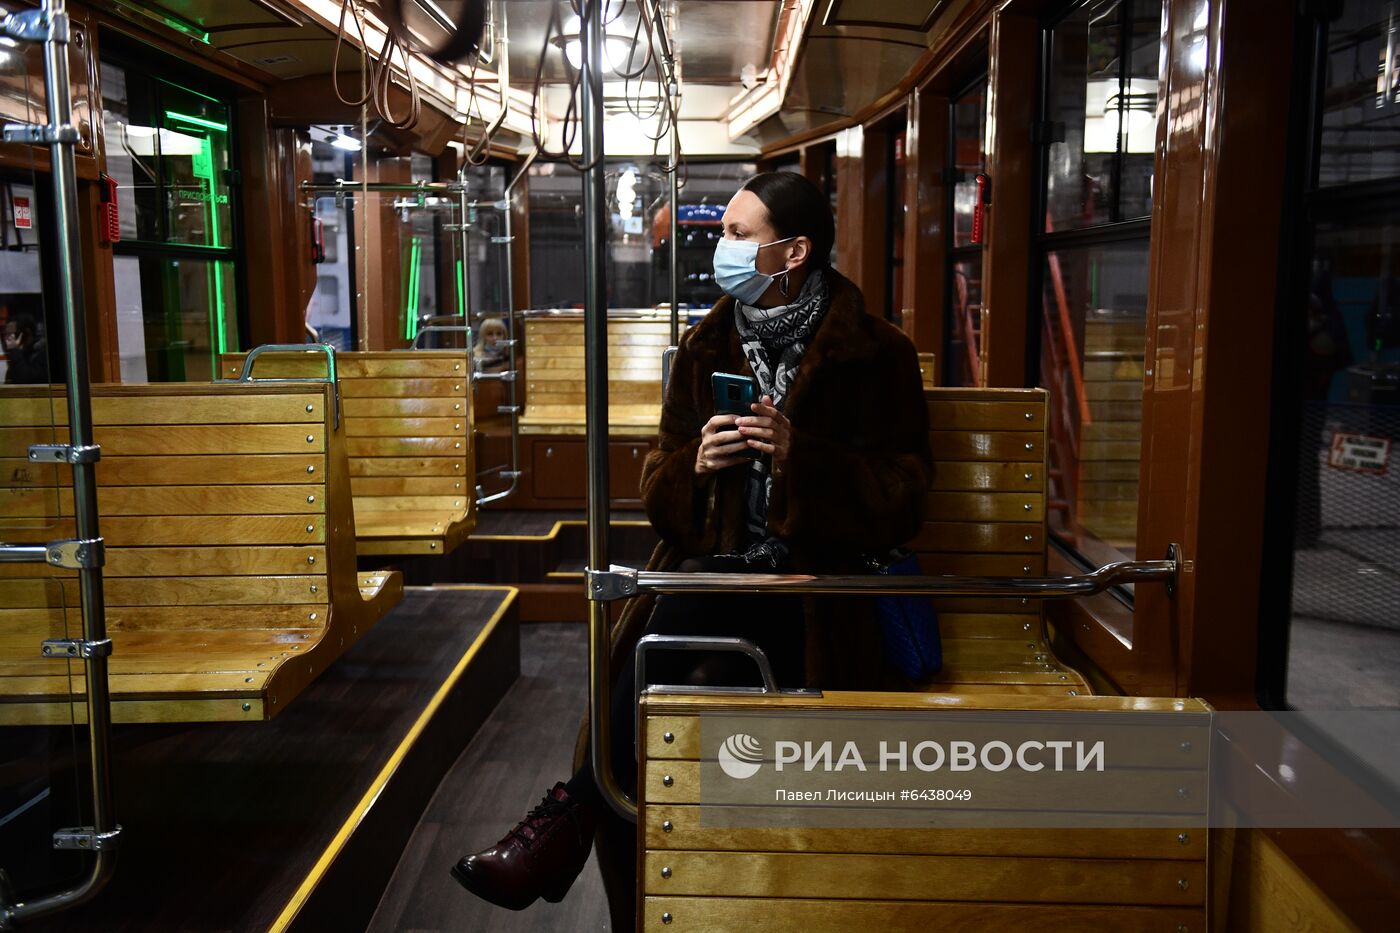 Презентация низкопольного трамвая в стиле ретро в Екатеринбурге 